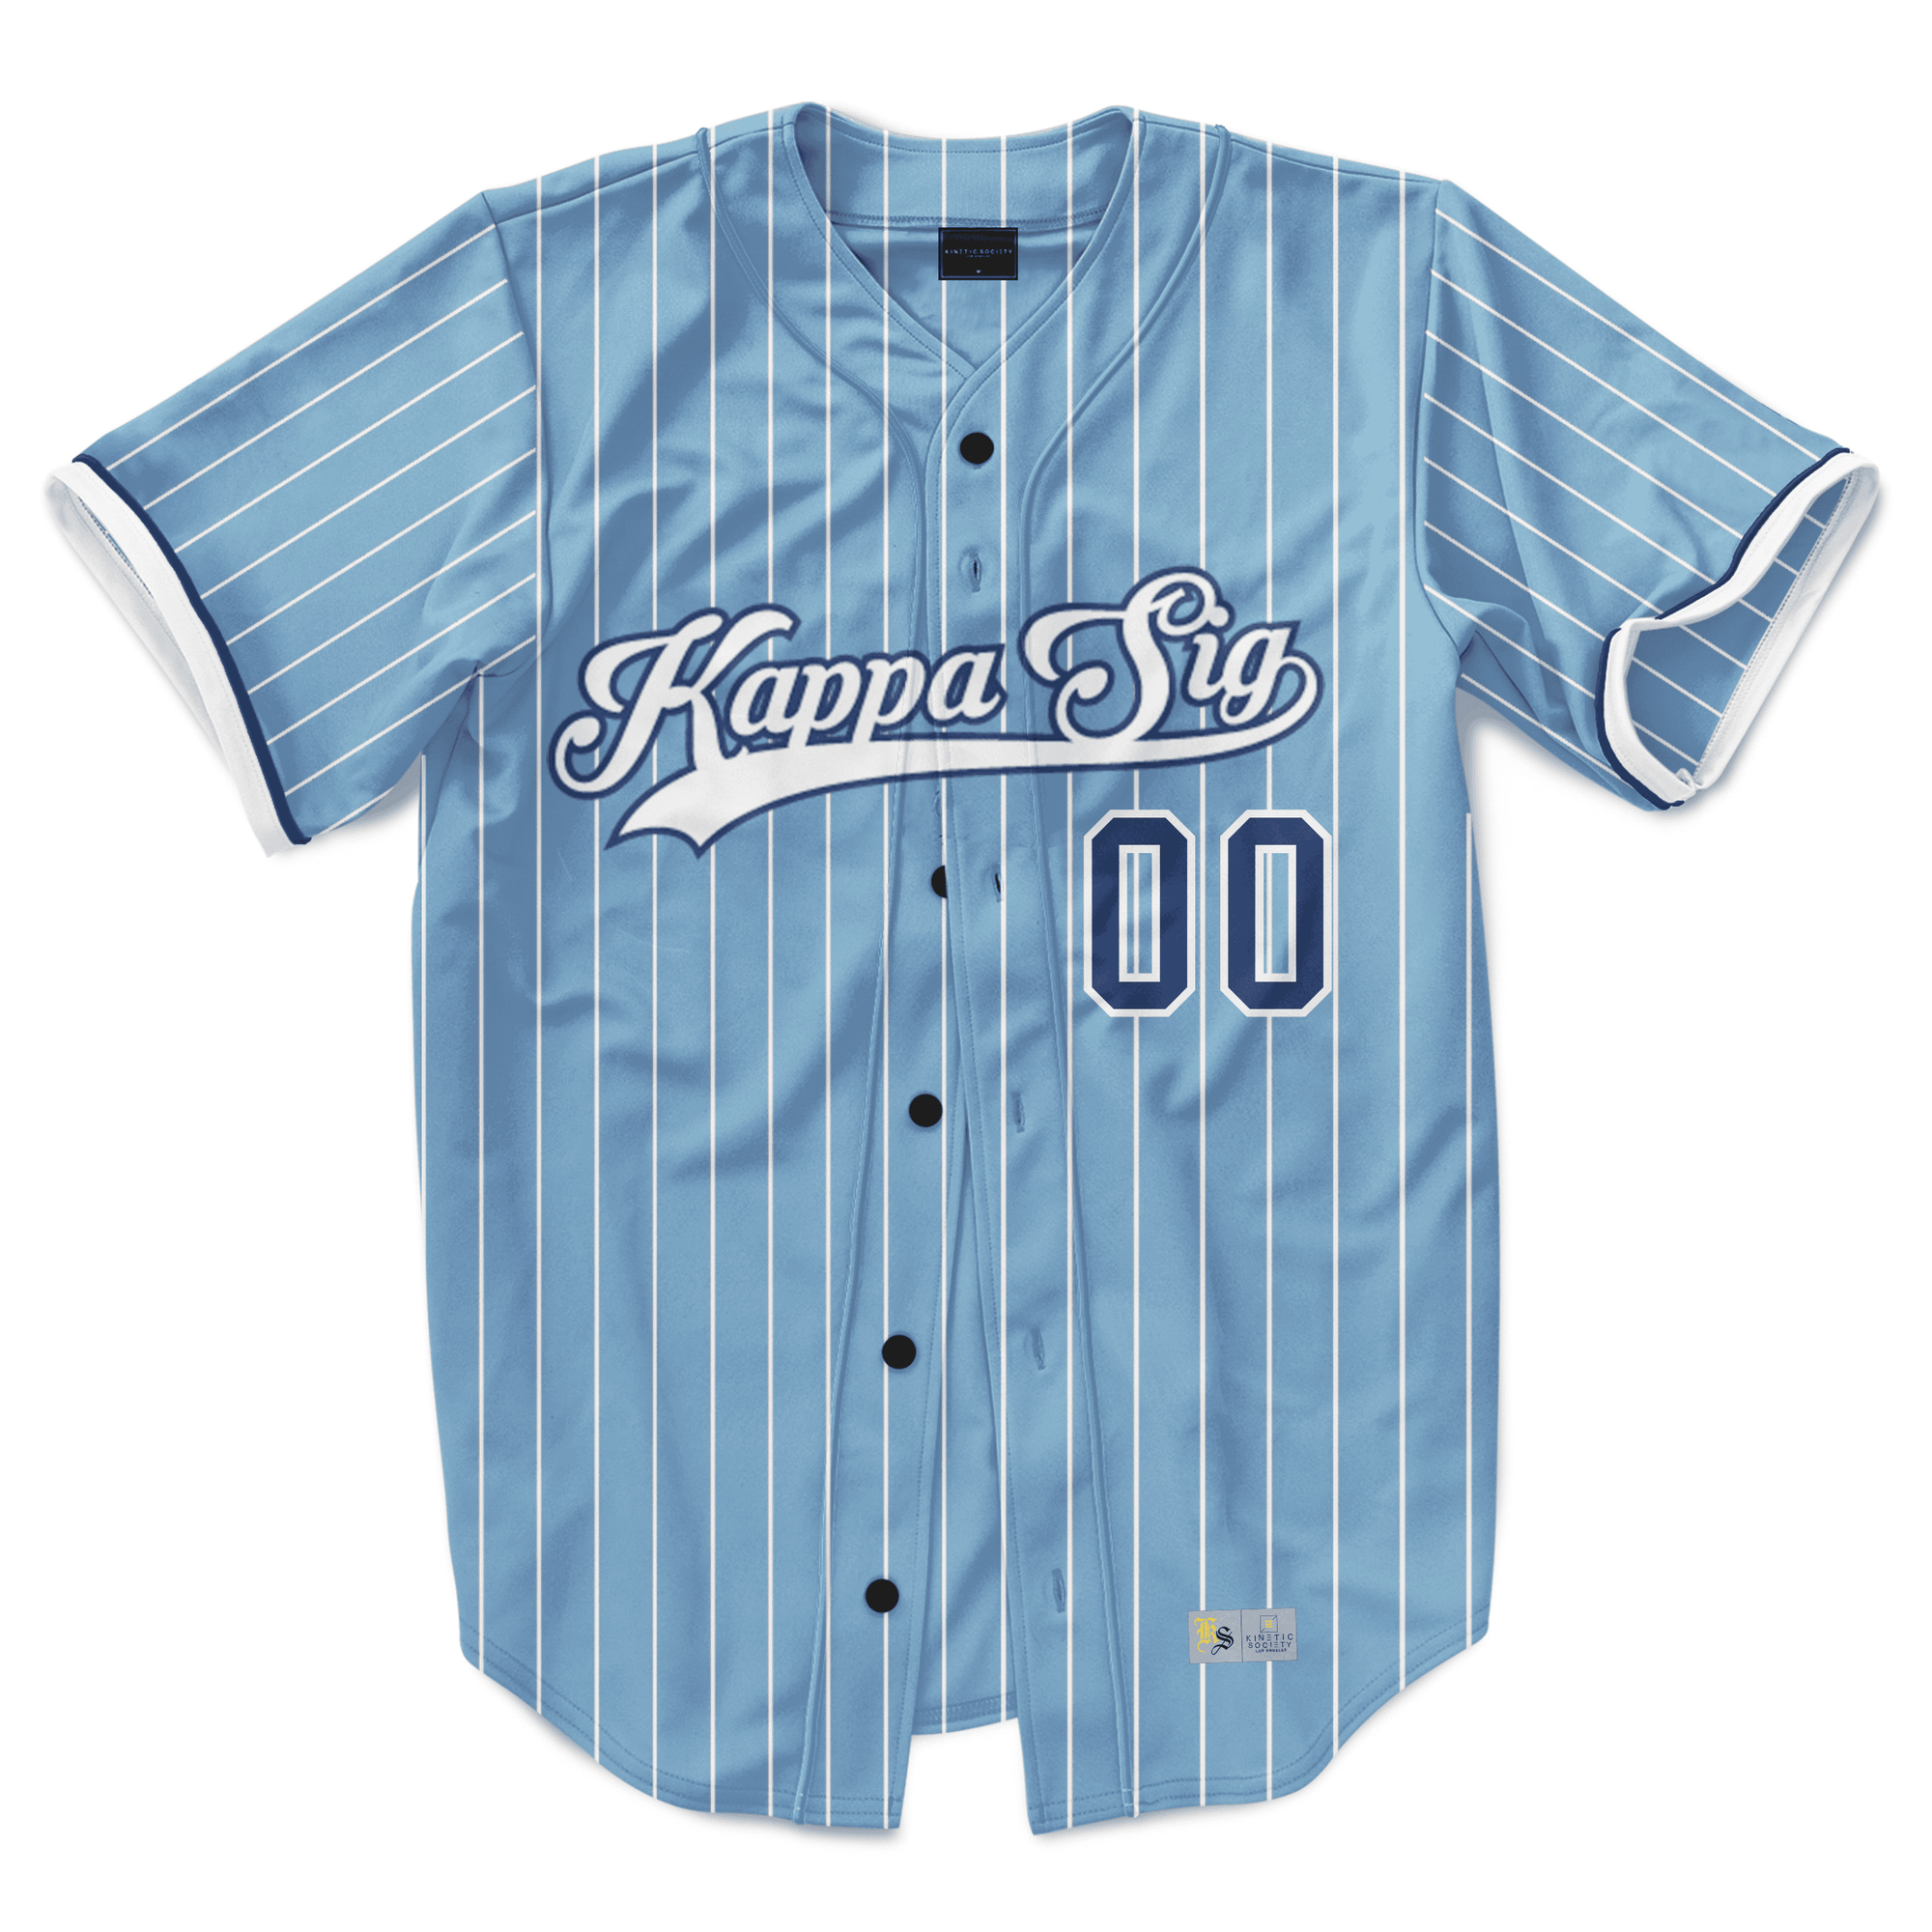 Kappa Sigma - Blue Shade Baseball Jersey